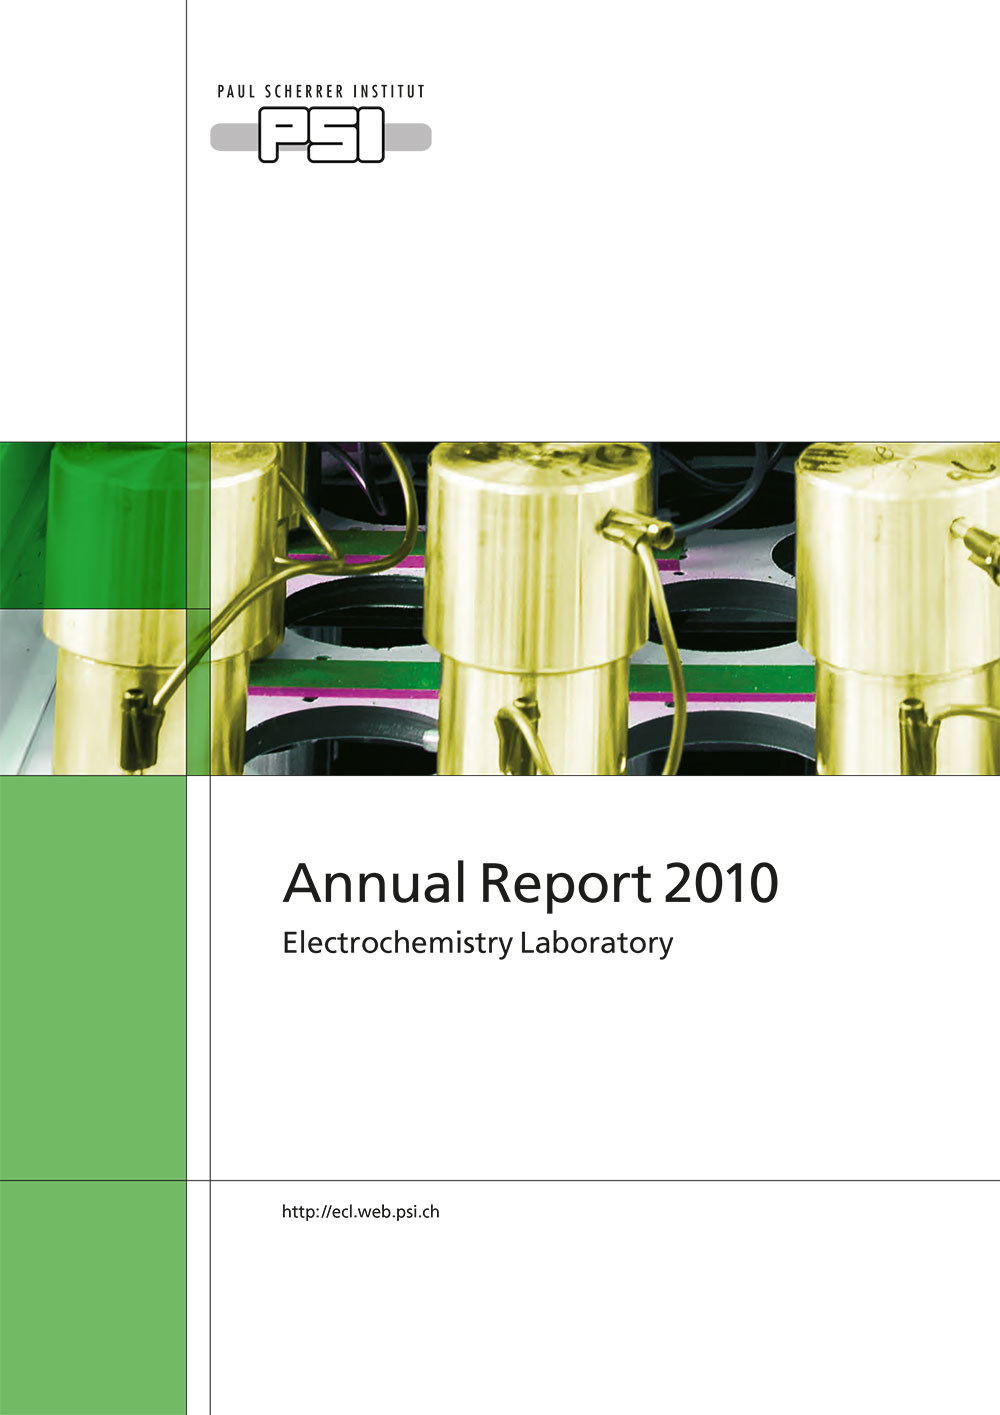 LEC annual report 2010